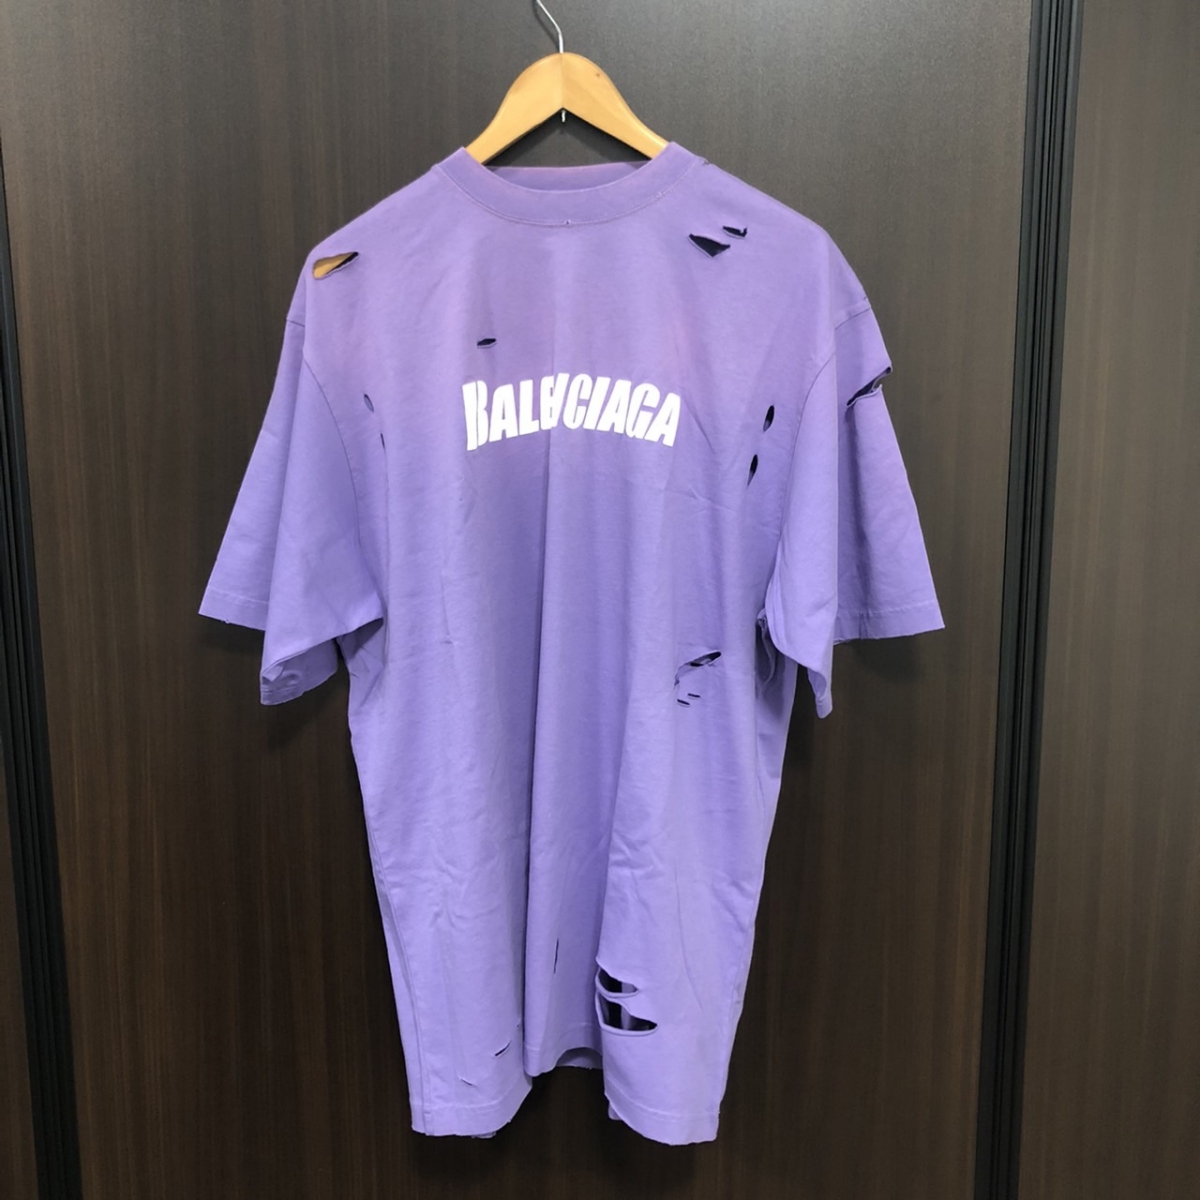 バレンシアガの2021年SS 651795 デストロイ加工ブランドロゴ クルーネックTシャツの買取実績です。